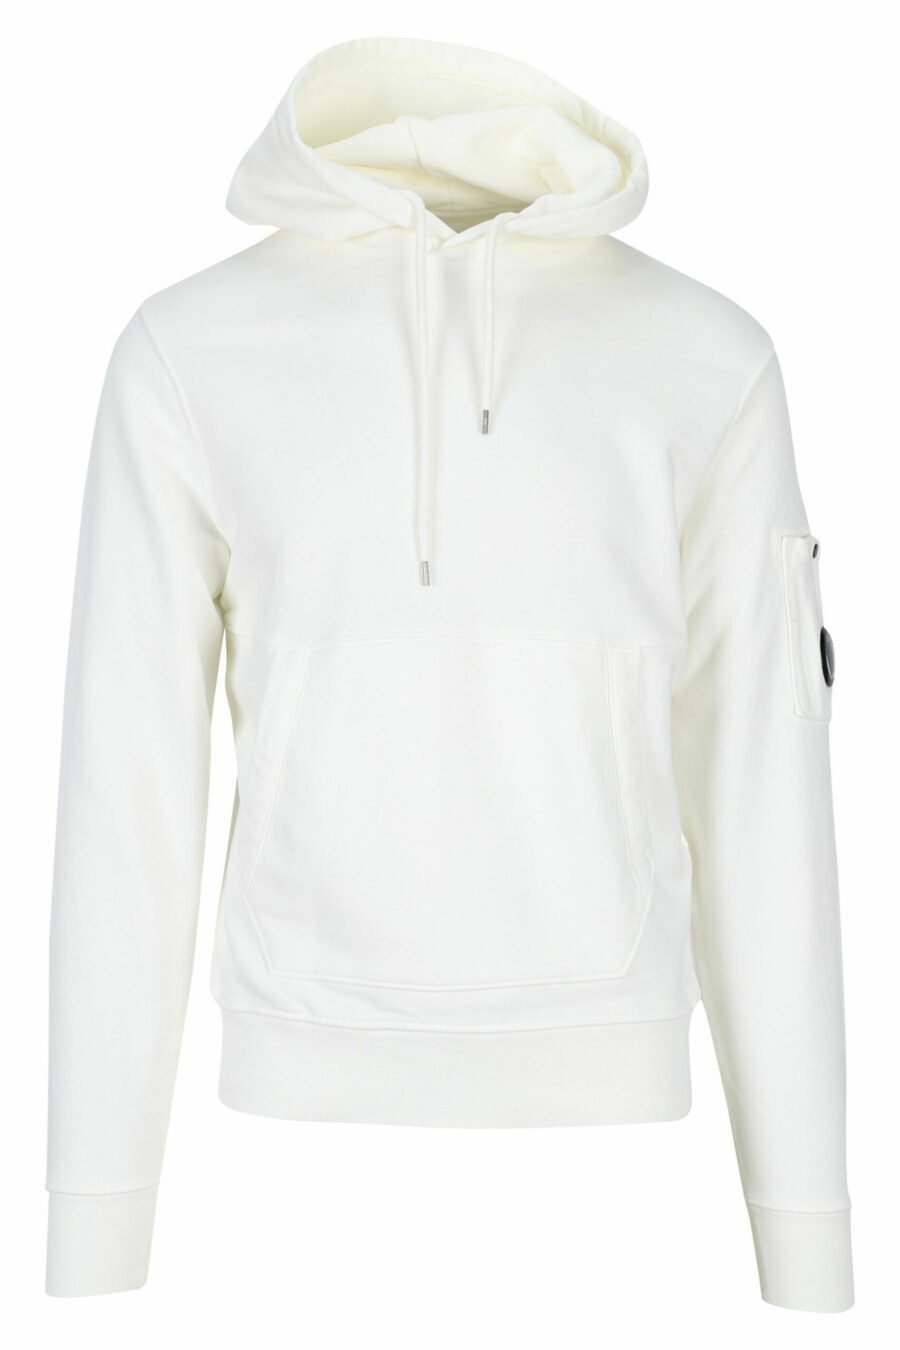 Weißes Kapuzensweatshirt mit seitlicher Logolinse - 7620943597783 skaliert